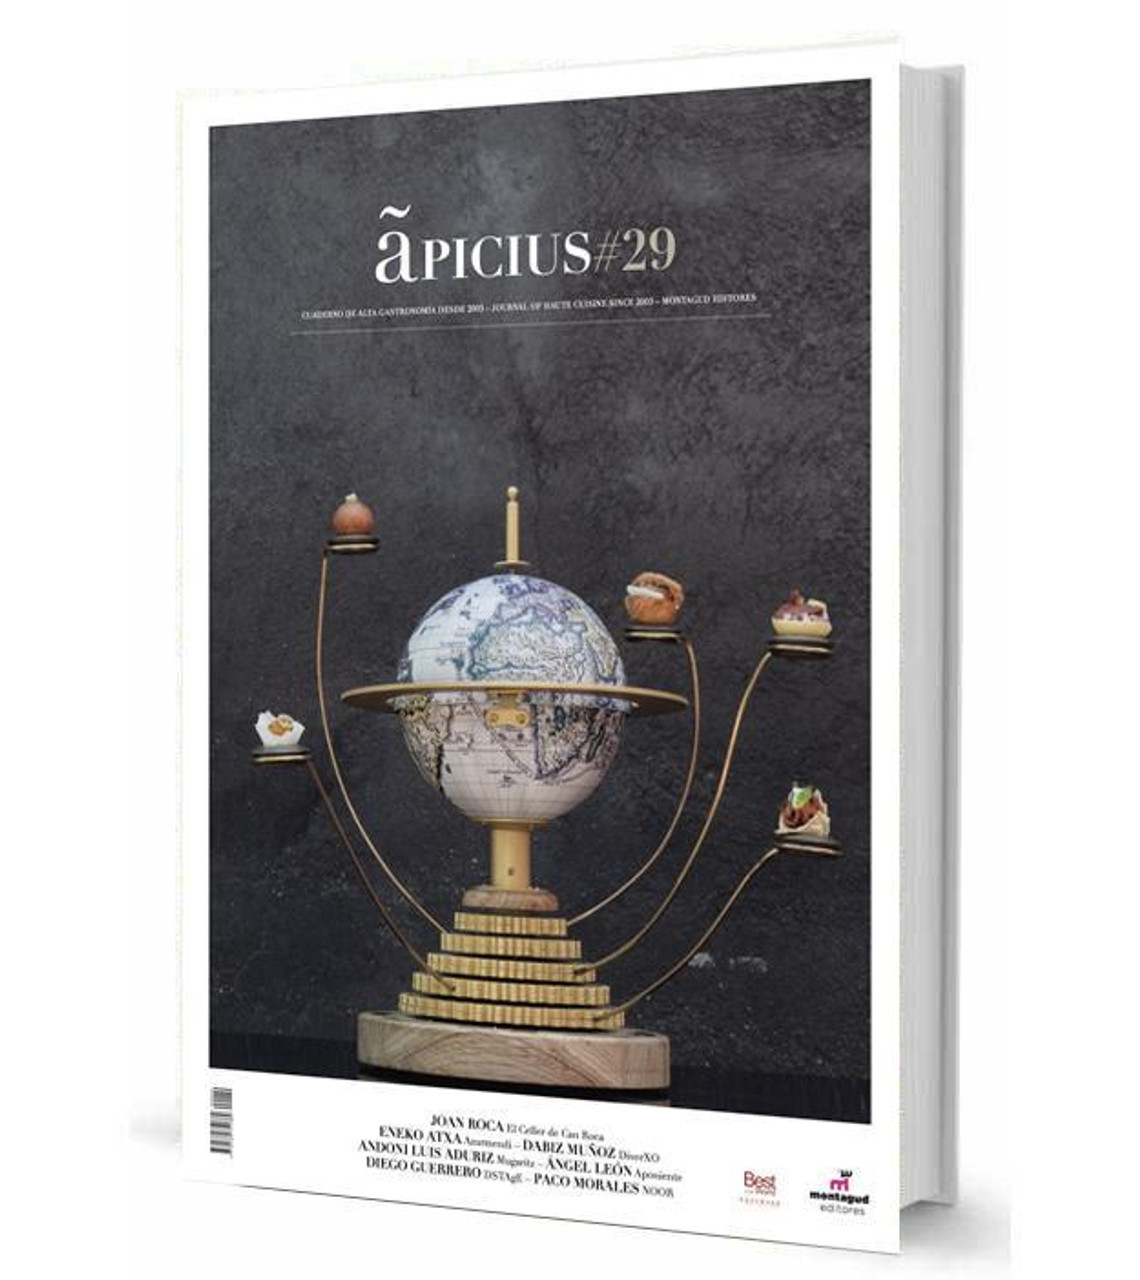 APICIUS MAGAZINE 29